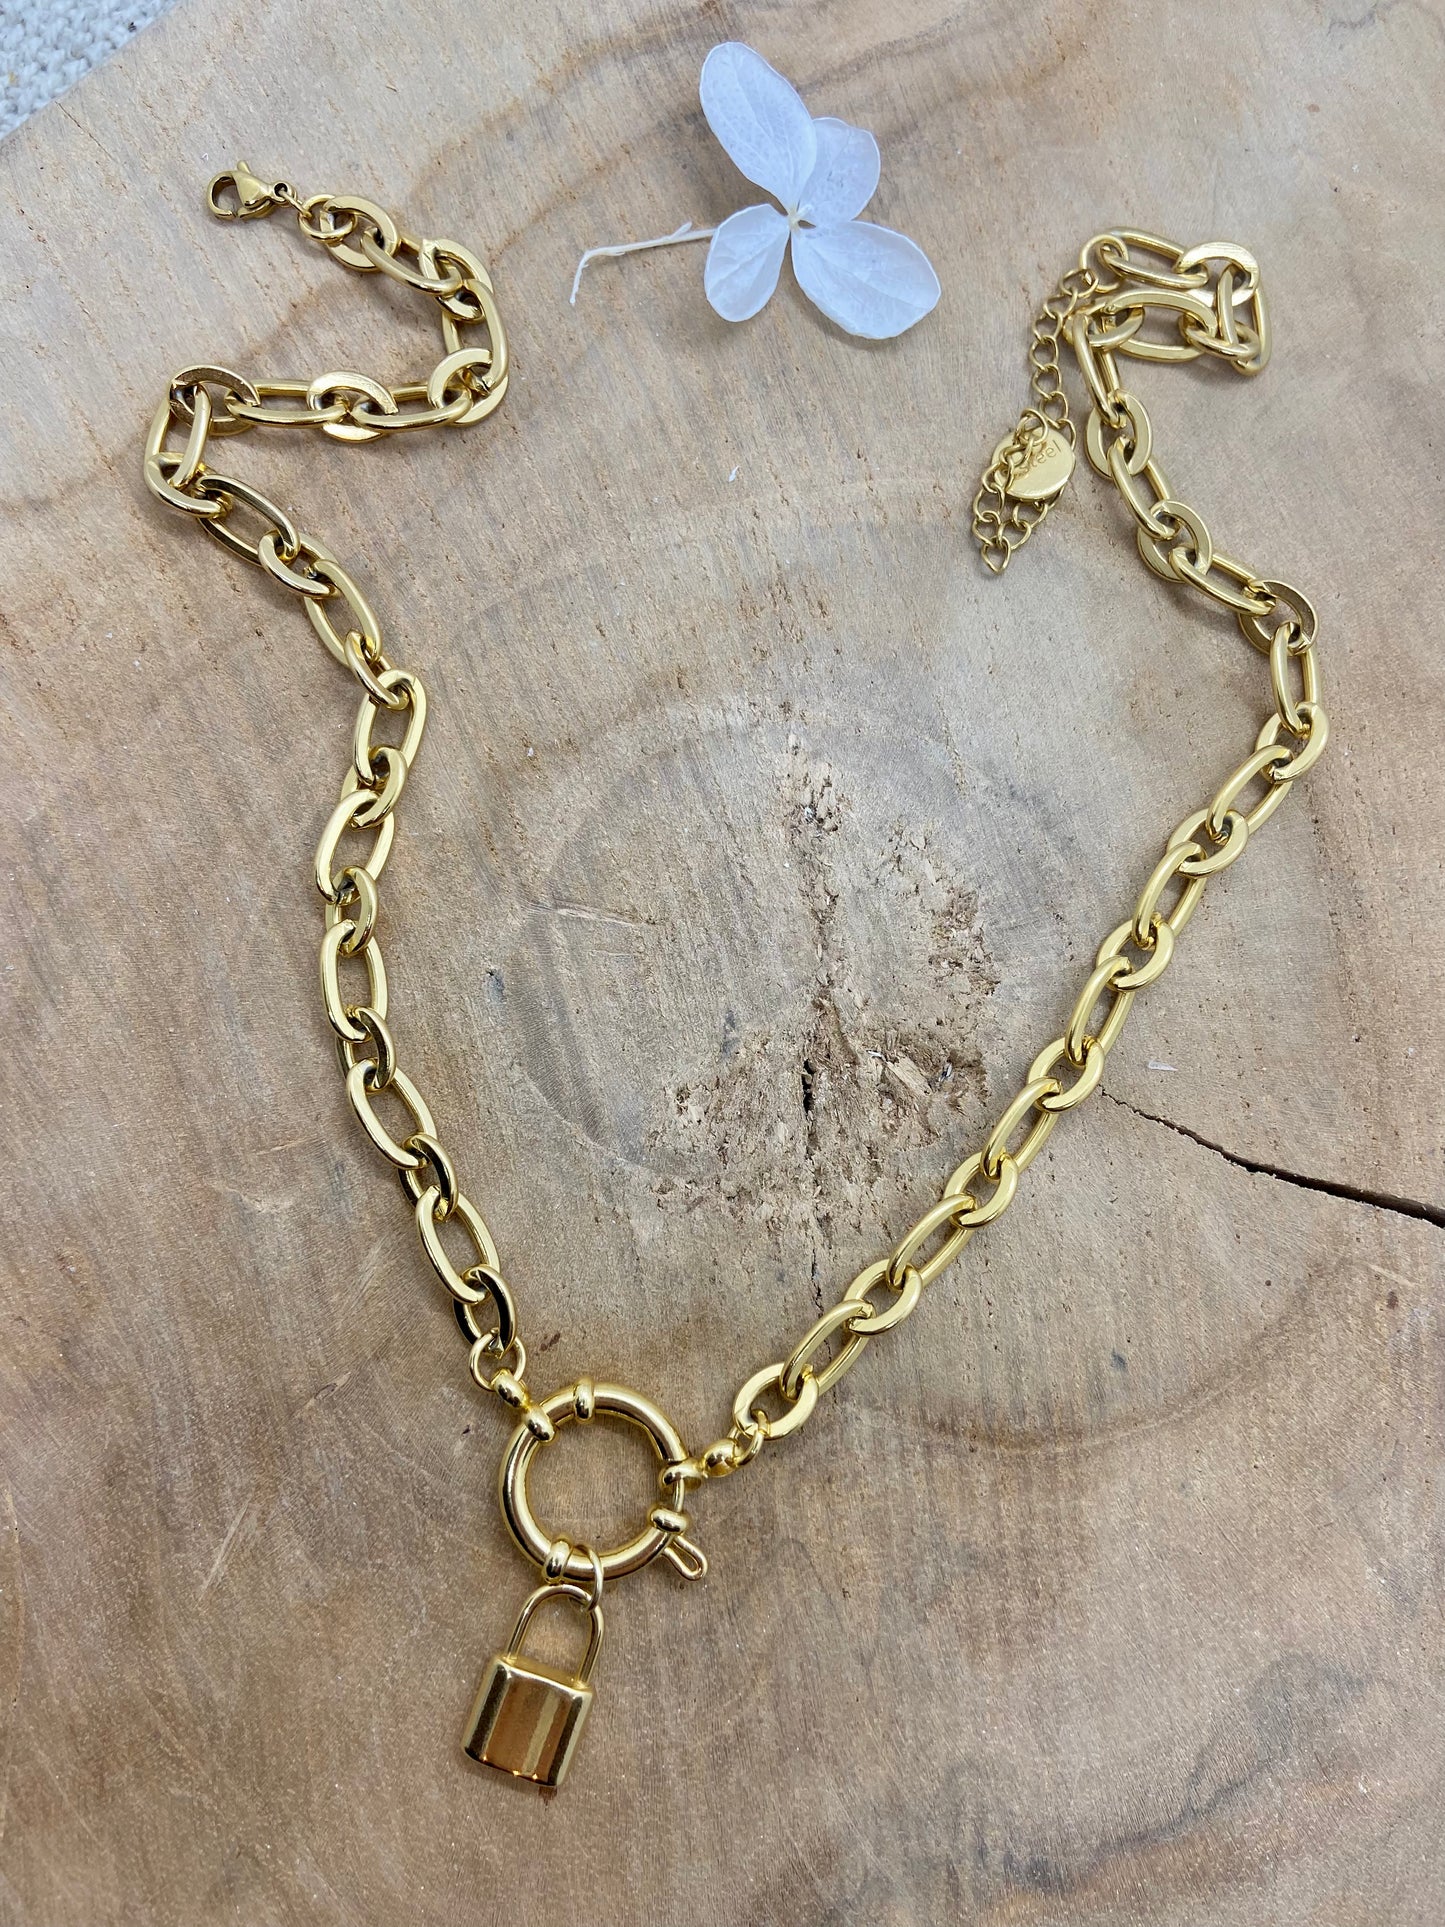 Collier chaine grosse maille dorée et pendentif cadenas